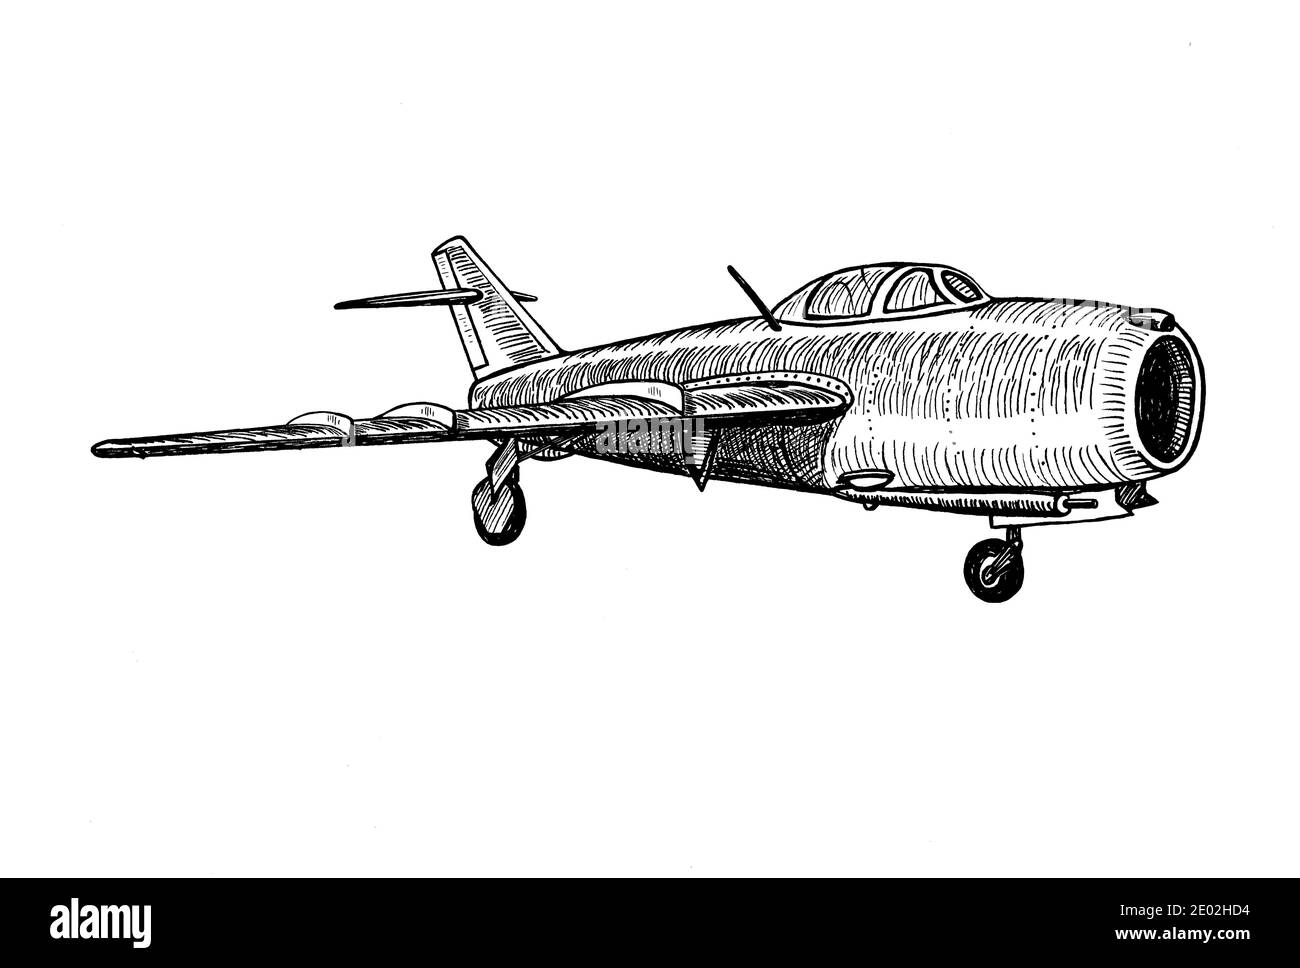 High-subsonic Jet Fighter Flugzeuge Hand gezeichnet realistische Skizze Doodle Grafiken monochrome Illustration auf weißem Hintergrund (Originale, keine Nachzeichnung) Stockfoto